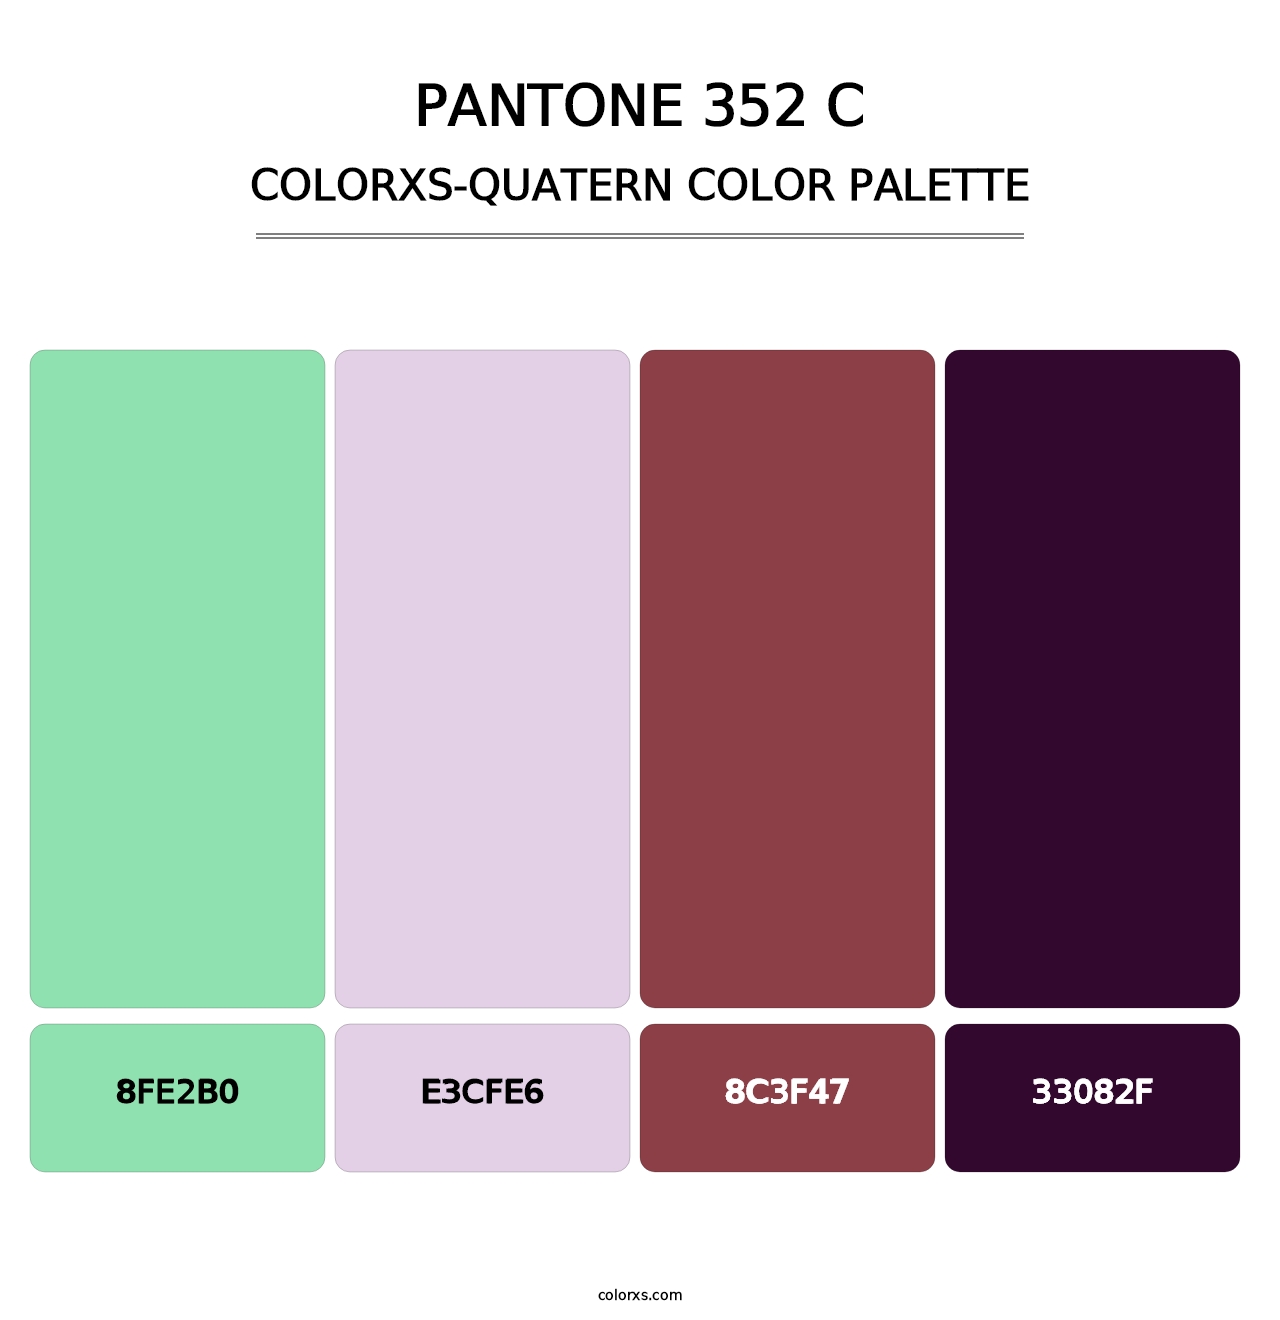 PANTONE 352 C - Colorxs Quatern Palette